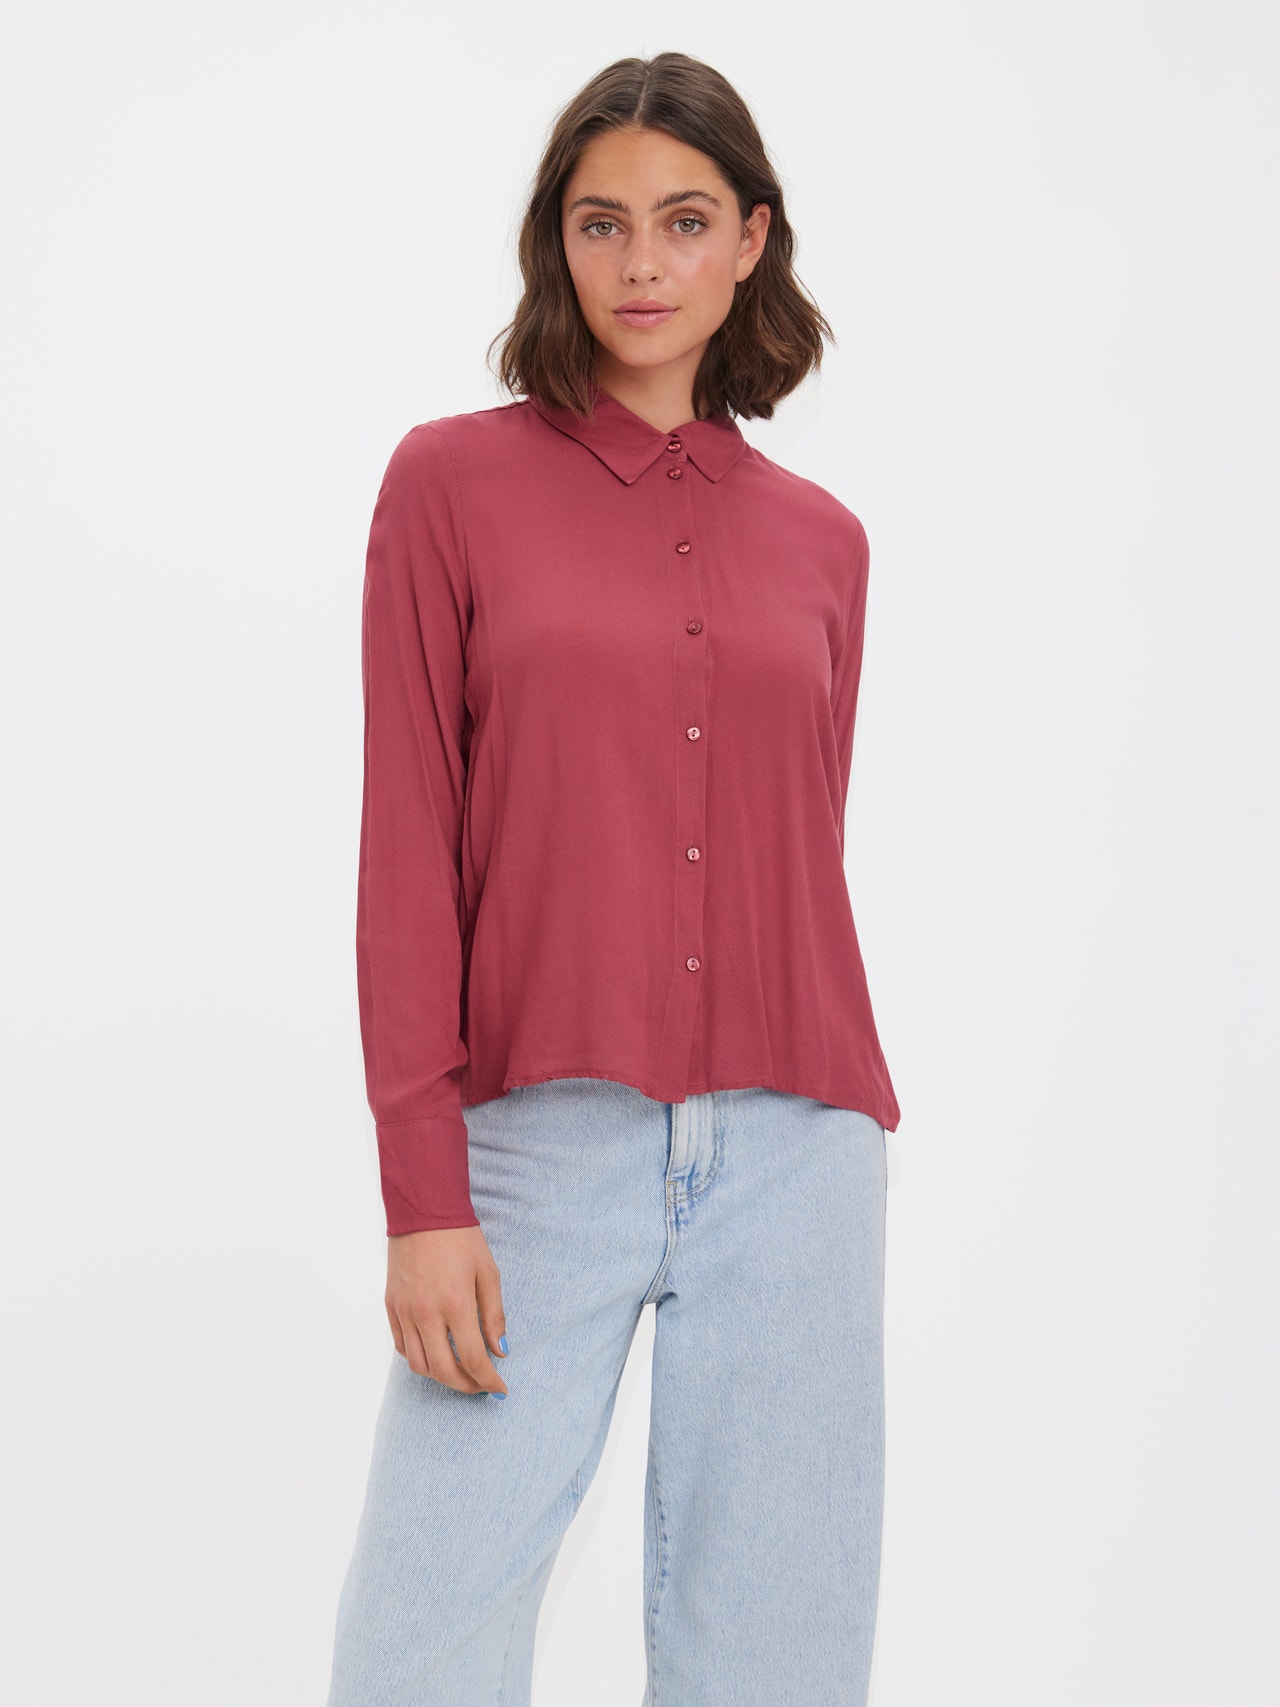 Vero Moda VMBEAUTY Camisas -Dry Rose - 10269526